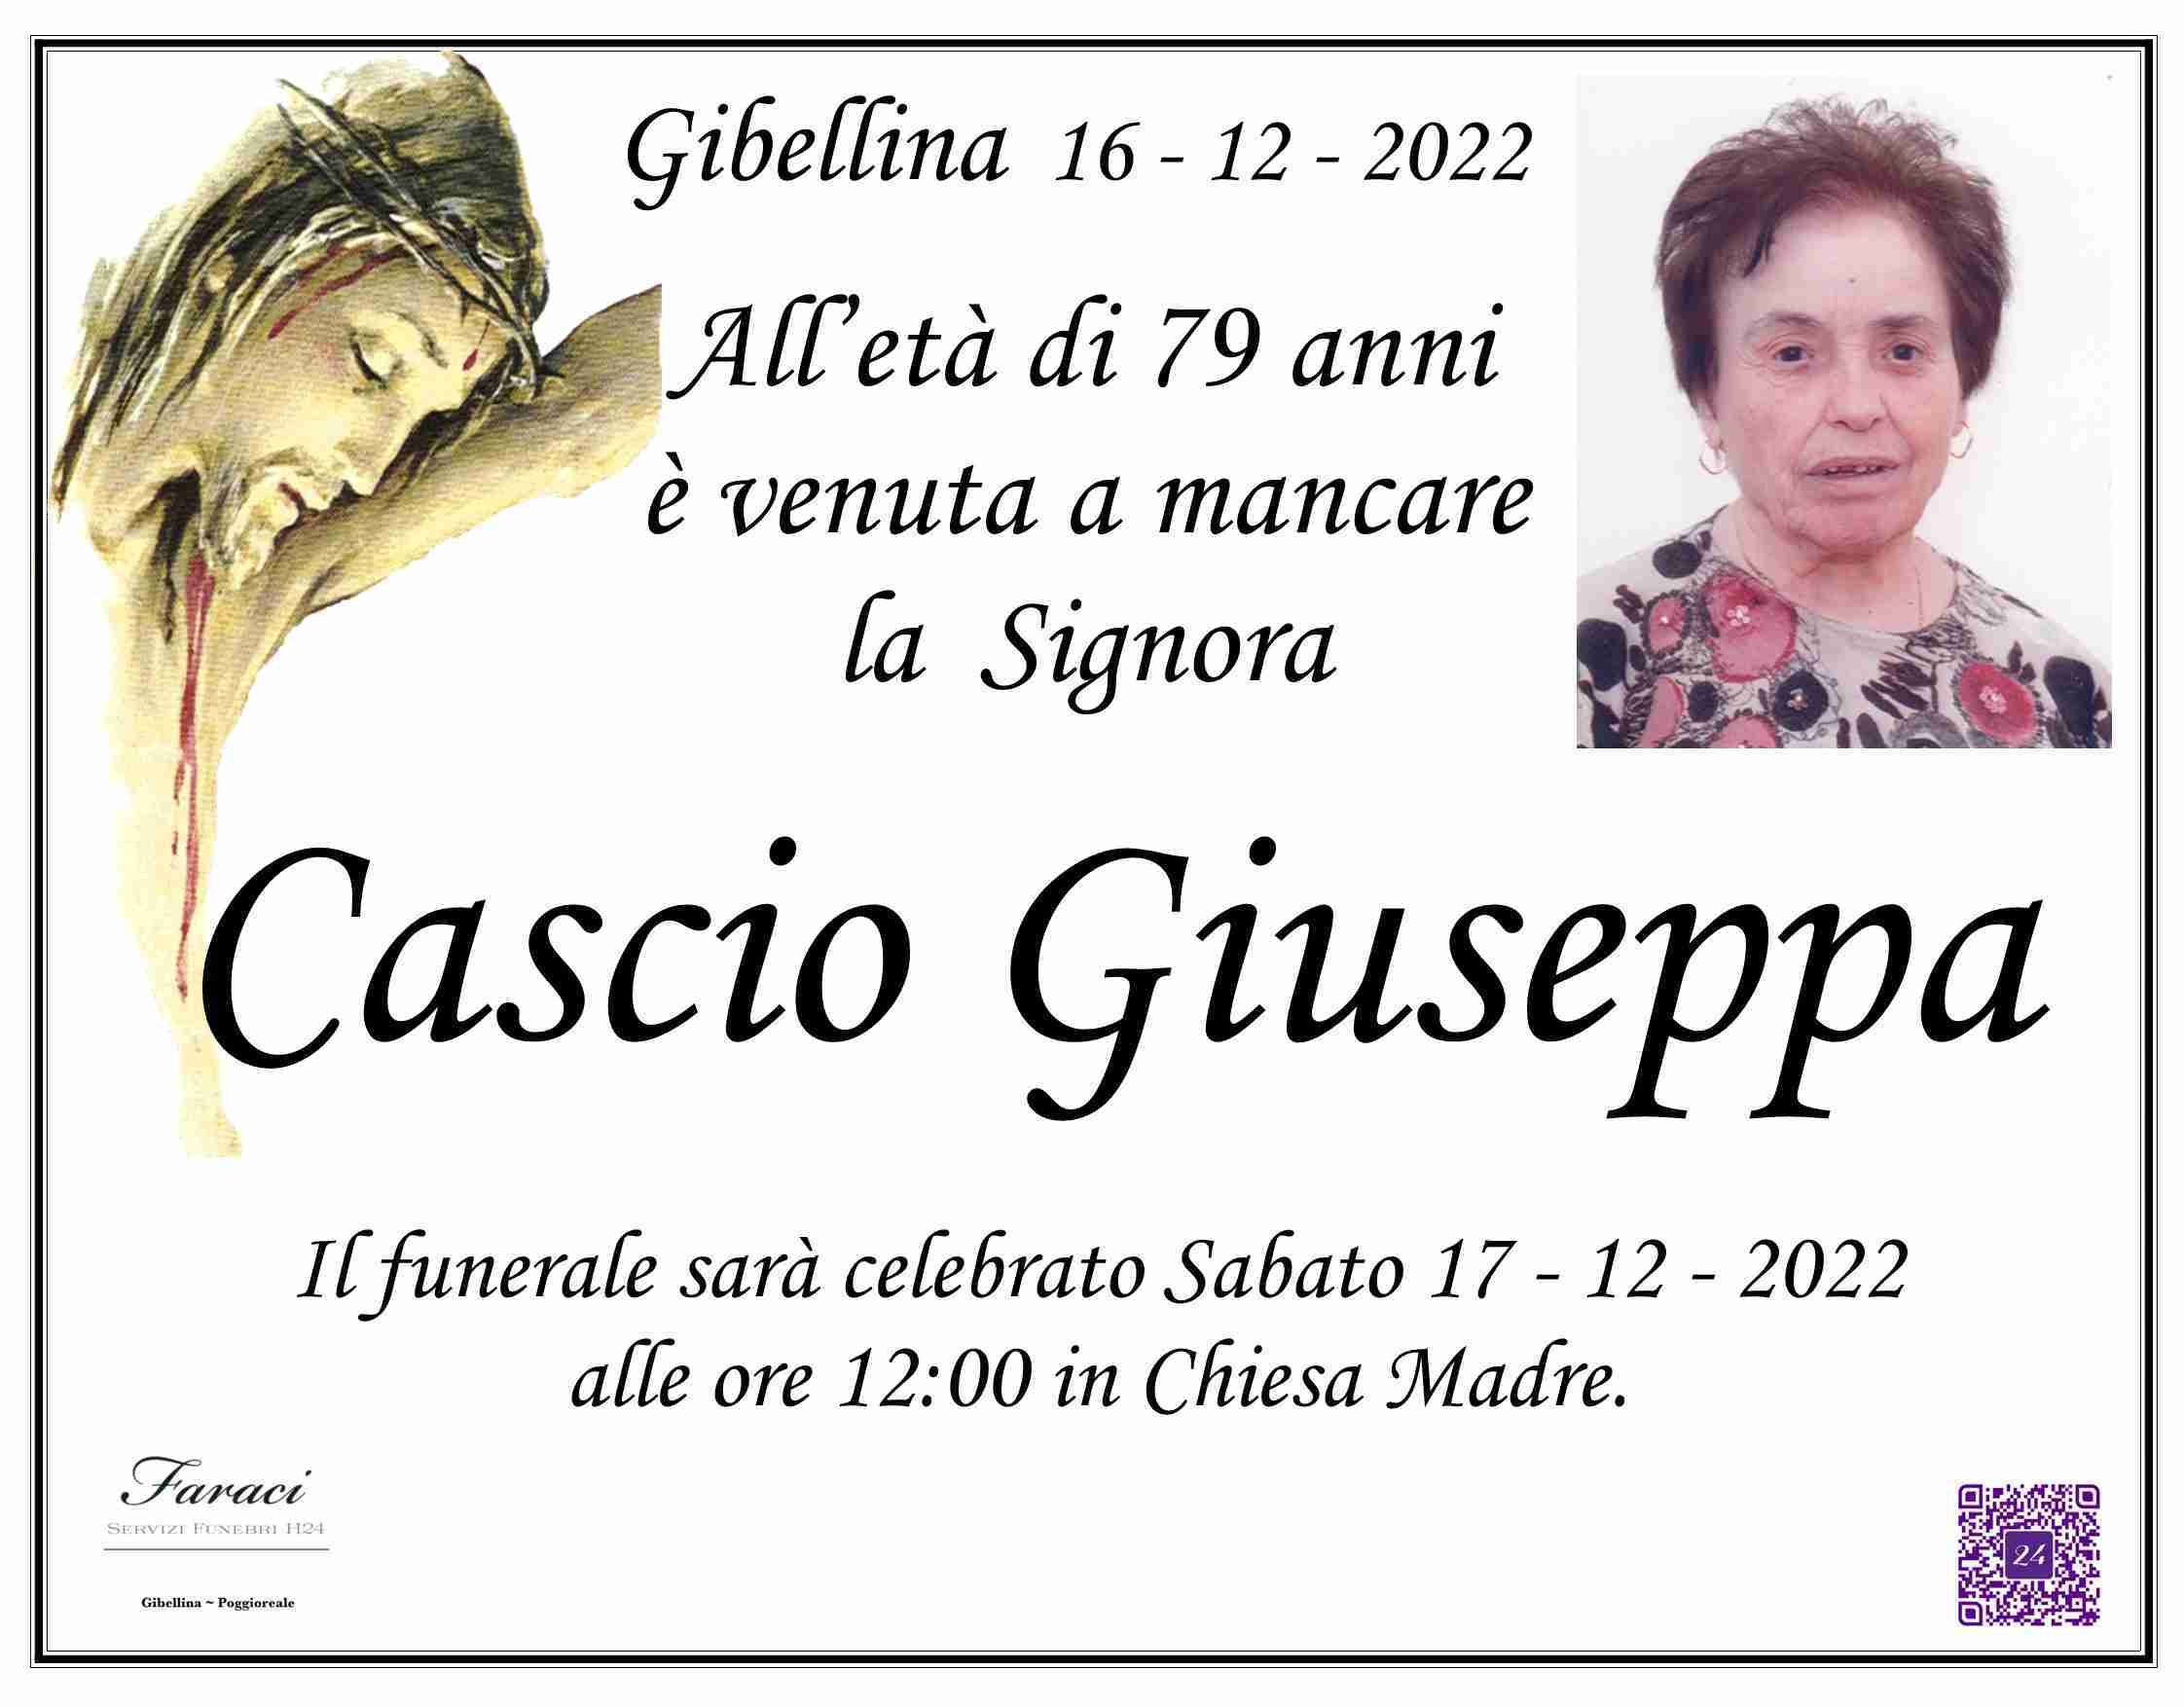 Giuseppa Cascio